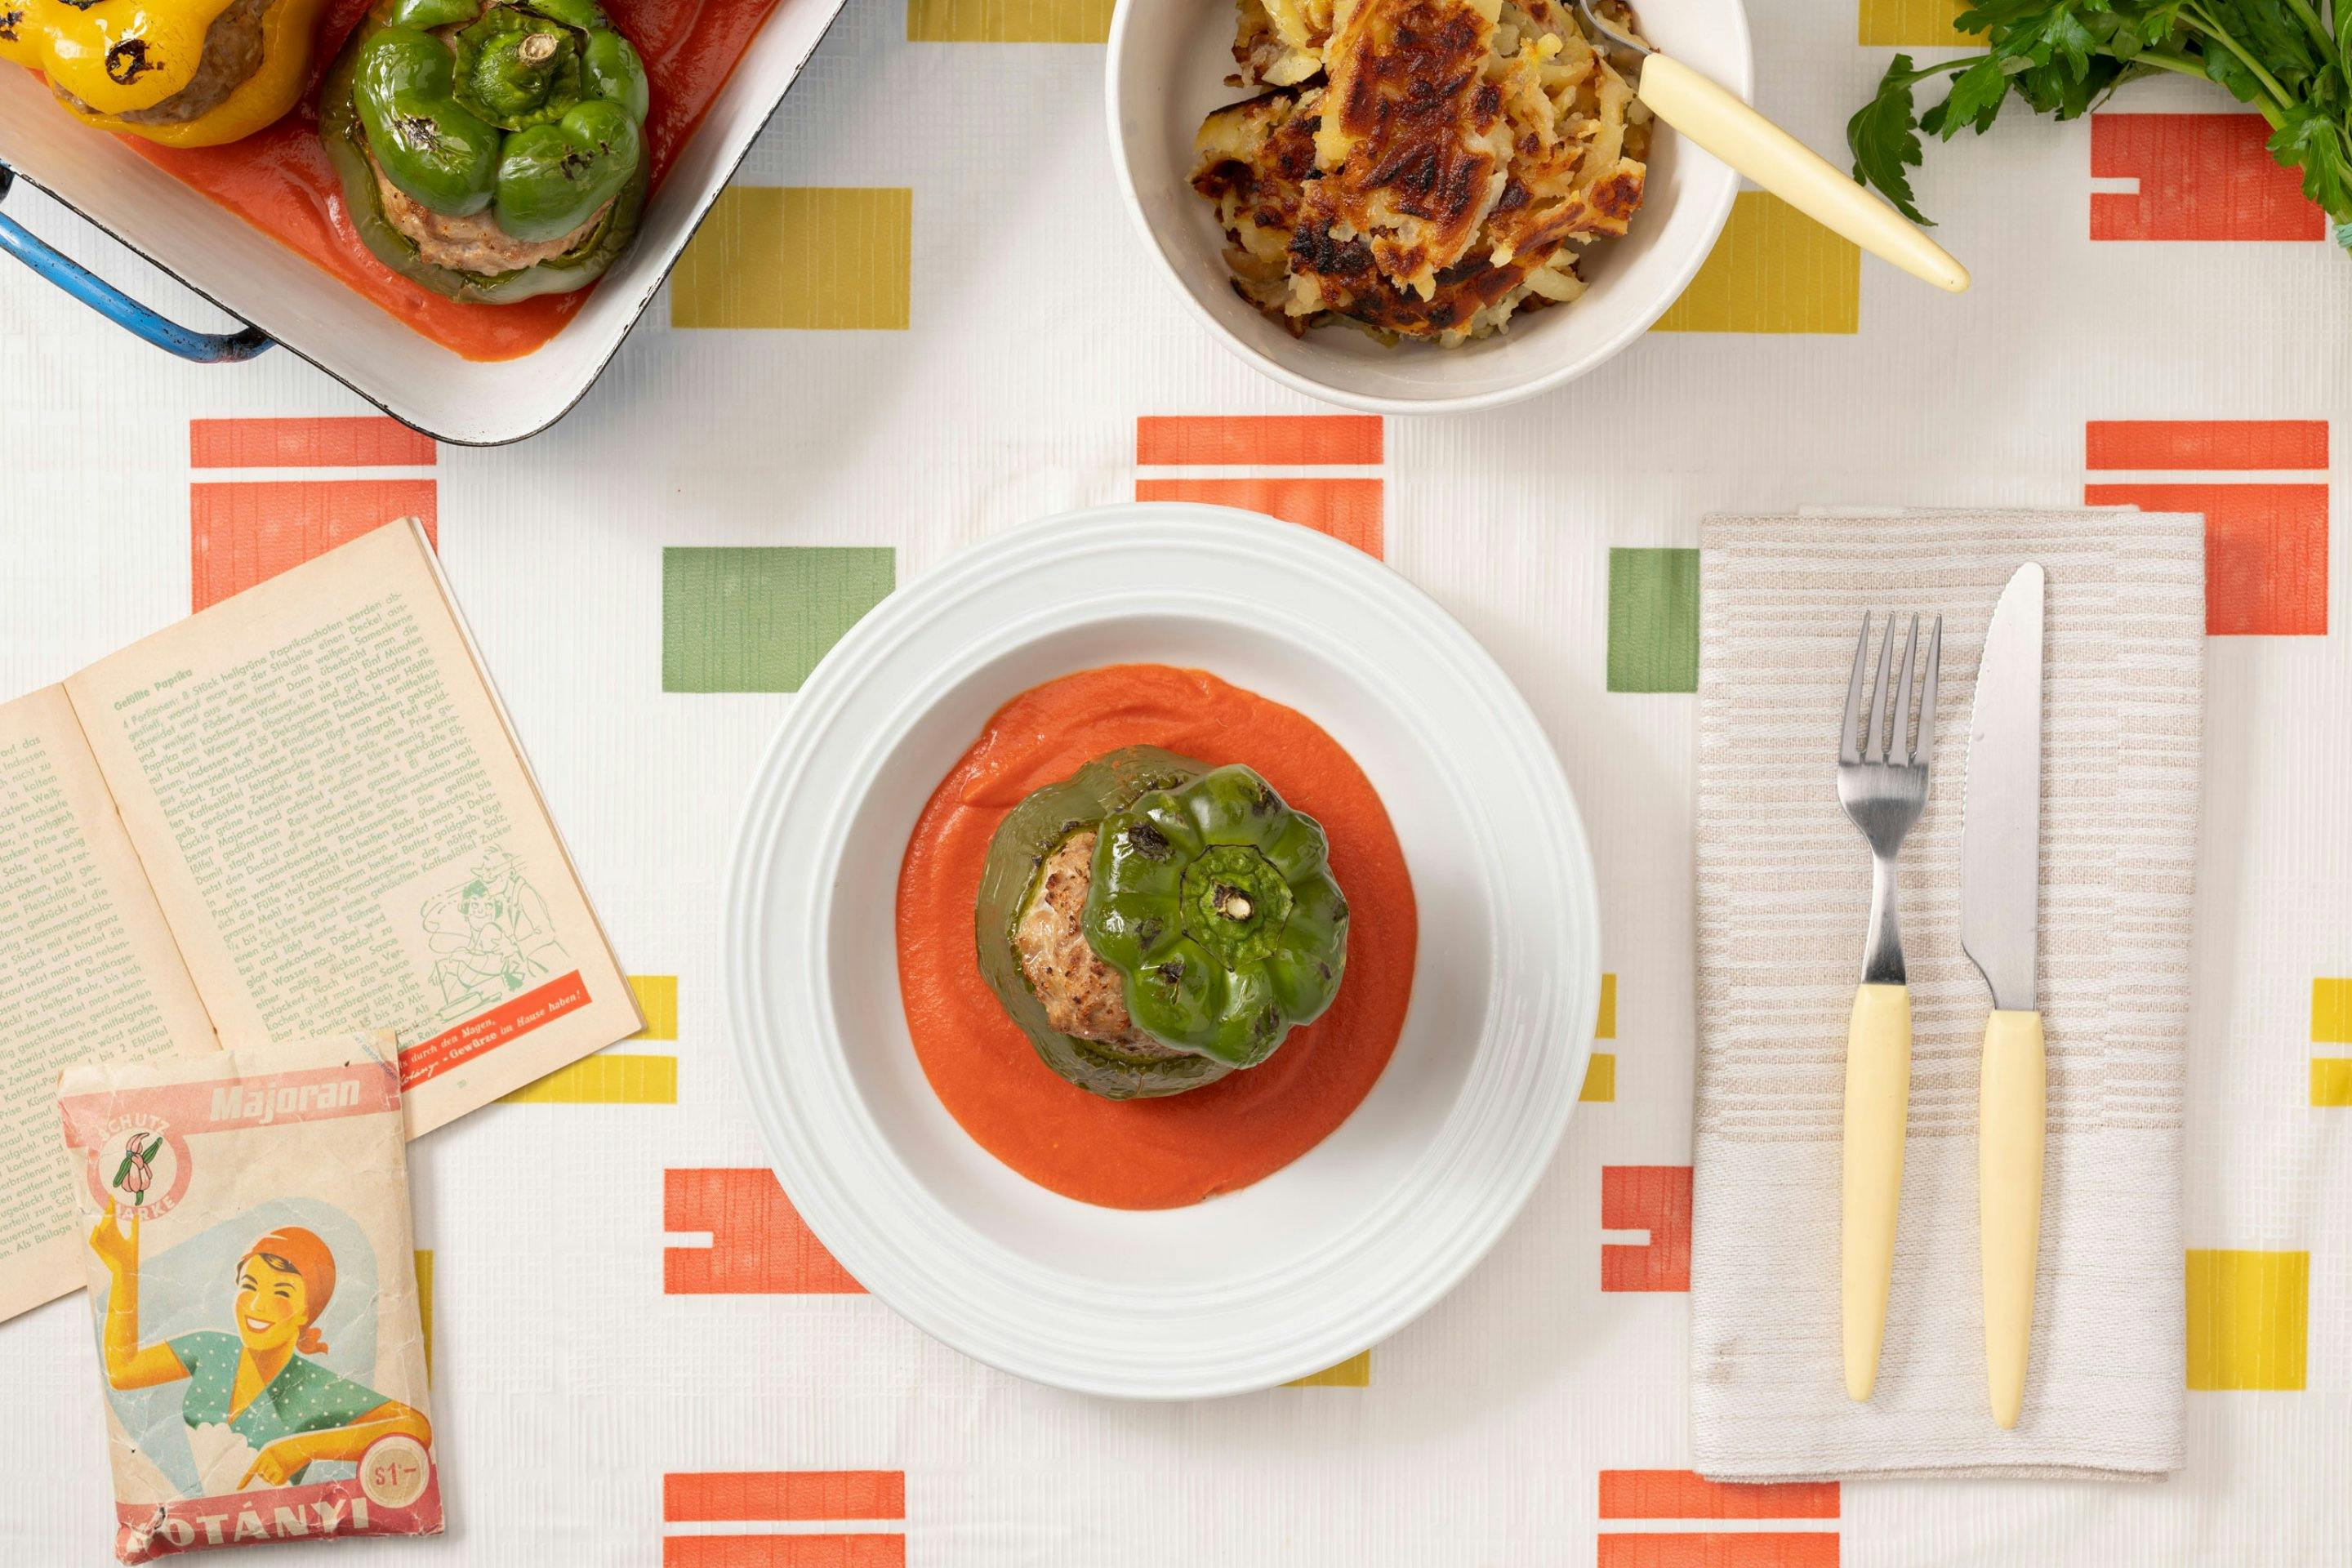 Bunte, gefüllte Paprika in einer Ofenform mit Tomatensauce, geröstete Kartoffeln als Beilage und ein weißer Teller mit einer grünen Paprika auf einem Tischtuch mit typischem fünfziger Jahre Muster.